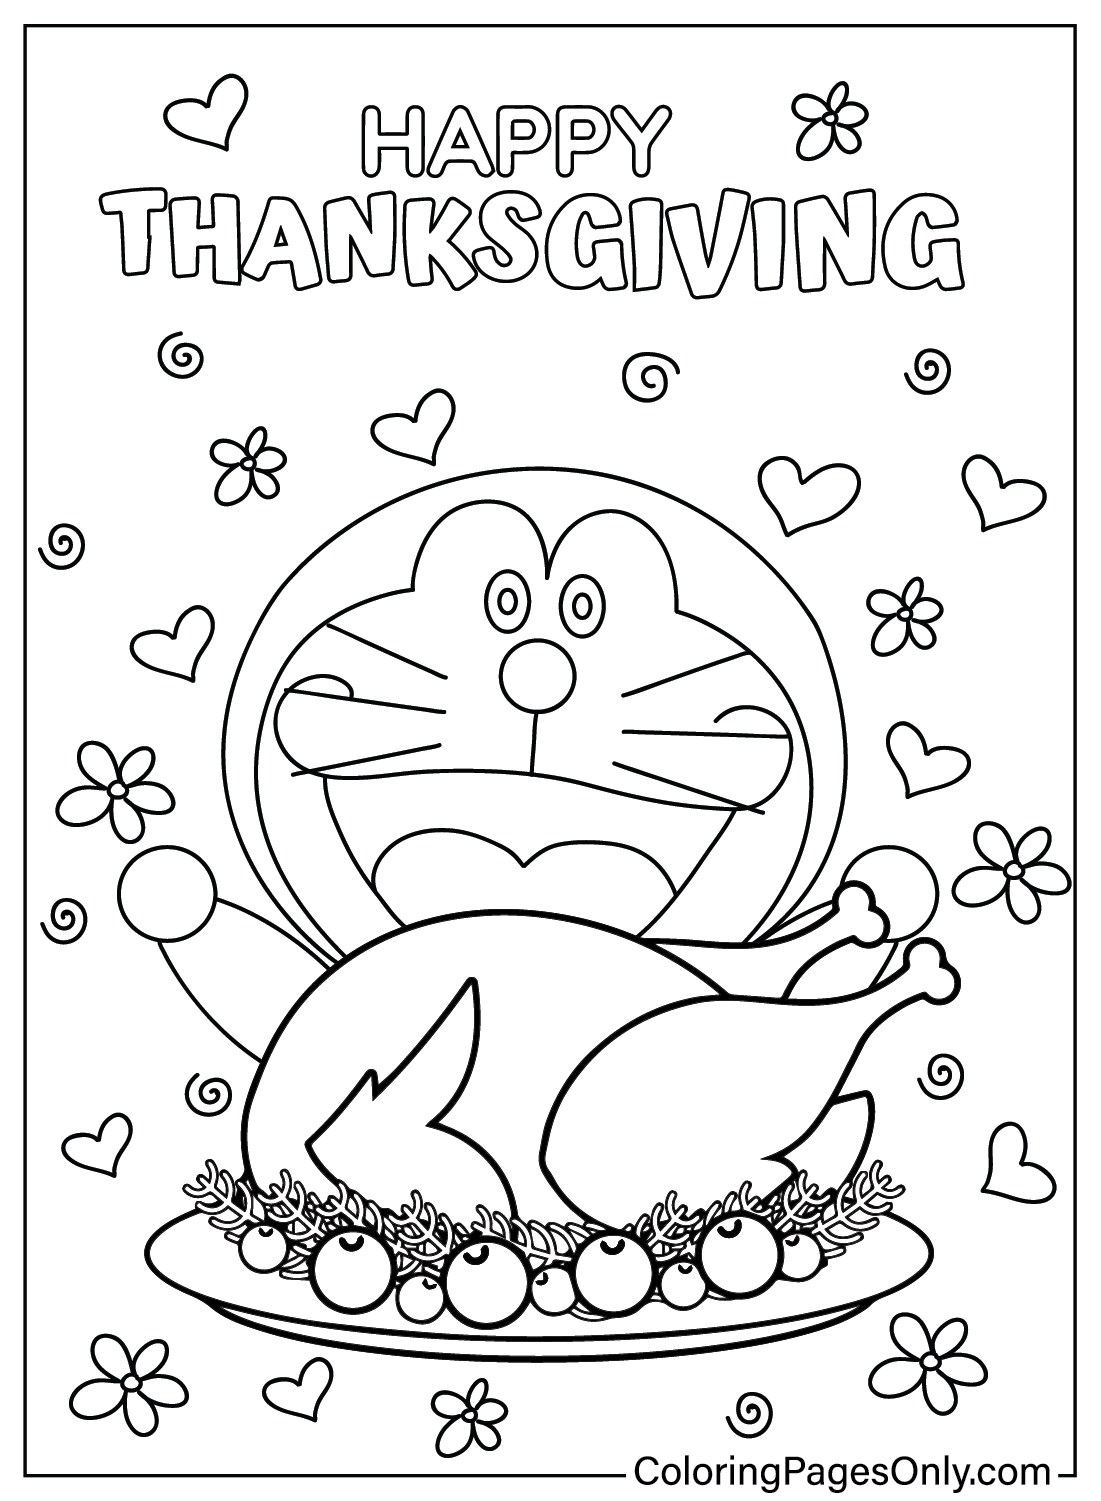 Página para colorear de Acción de Gracias de Doreamon de dibujos animados de Acción de Gracias